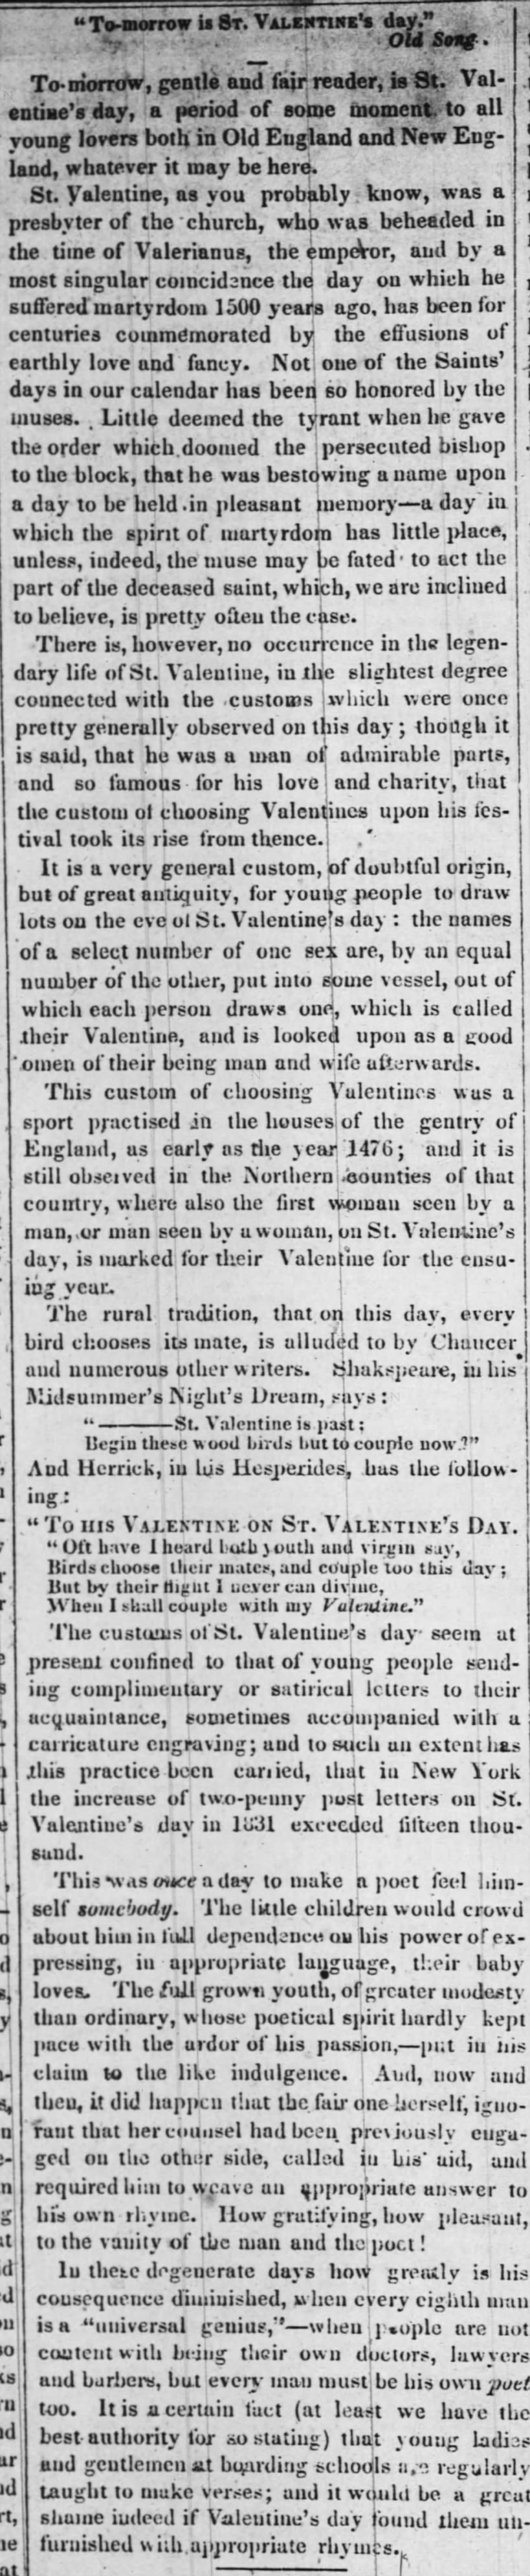 Valentine's customs revealed in 1839 column.